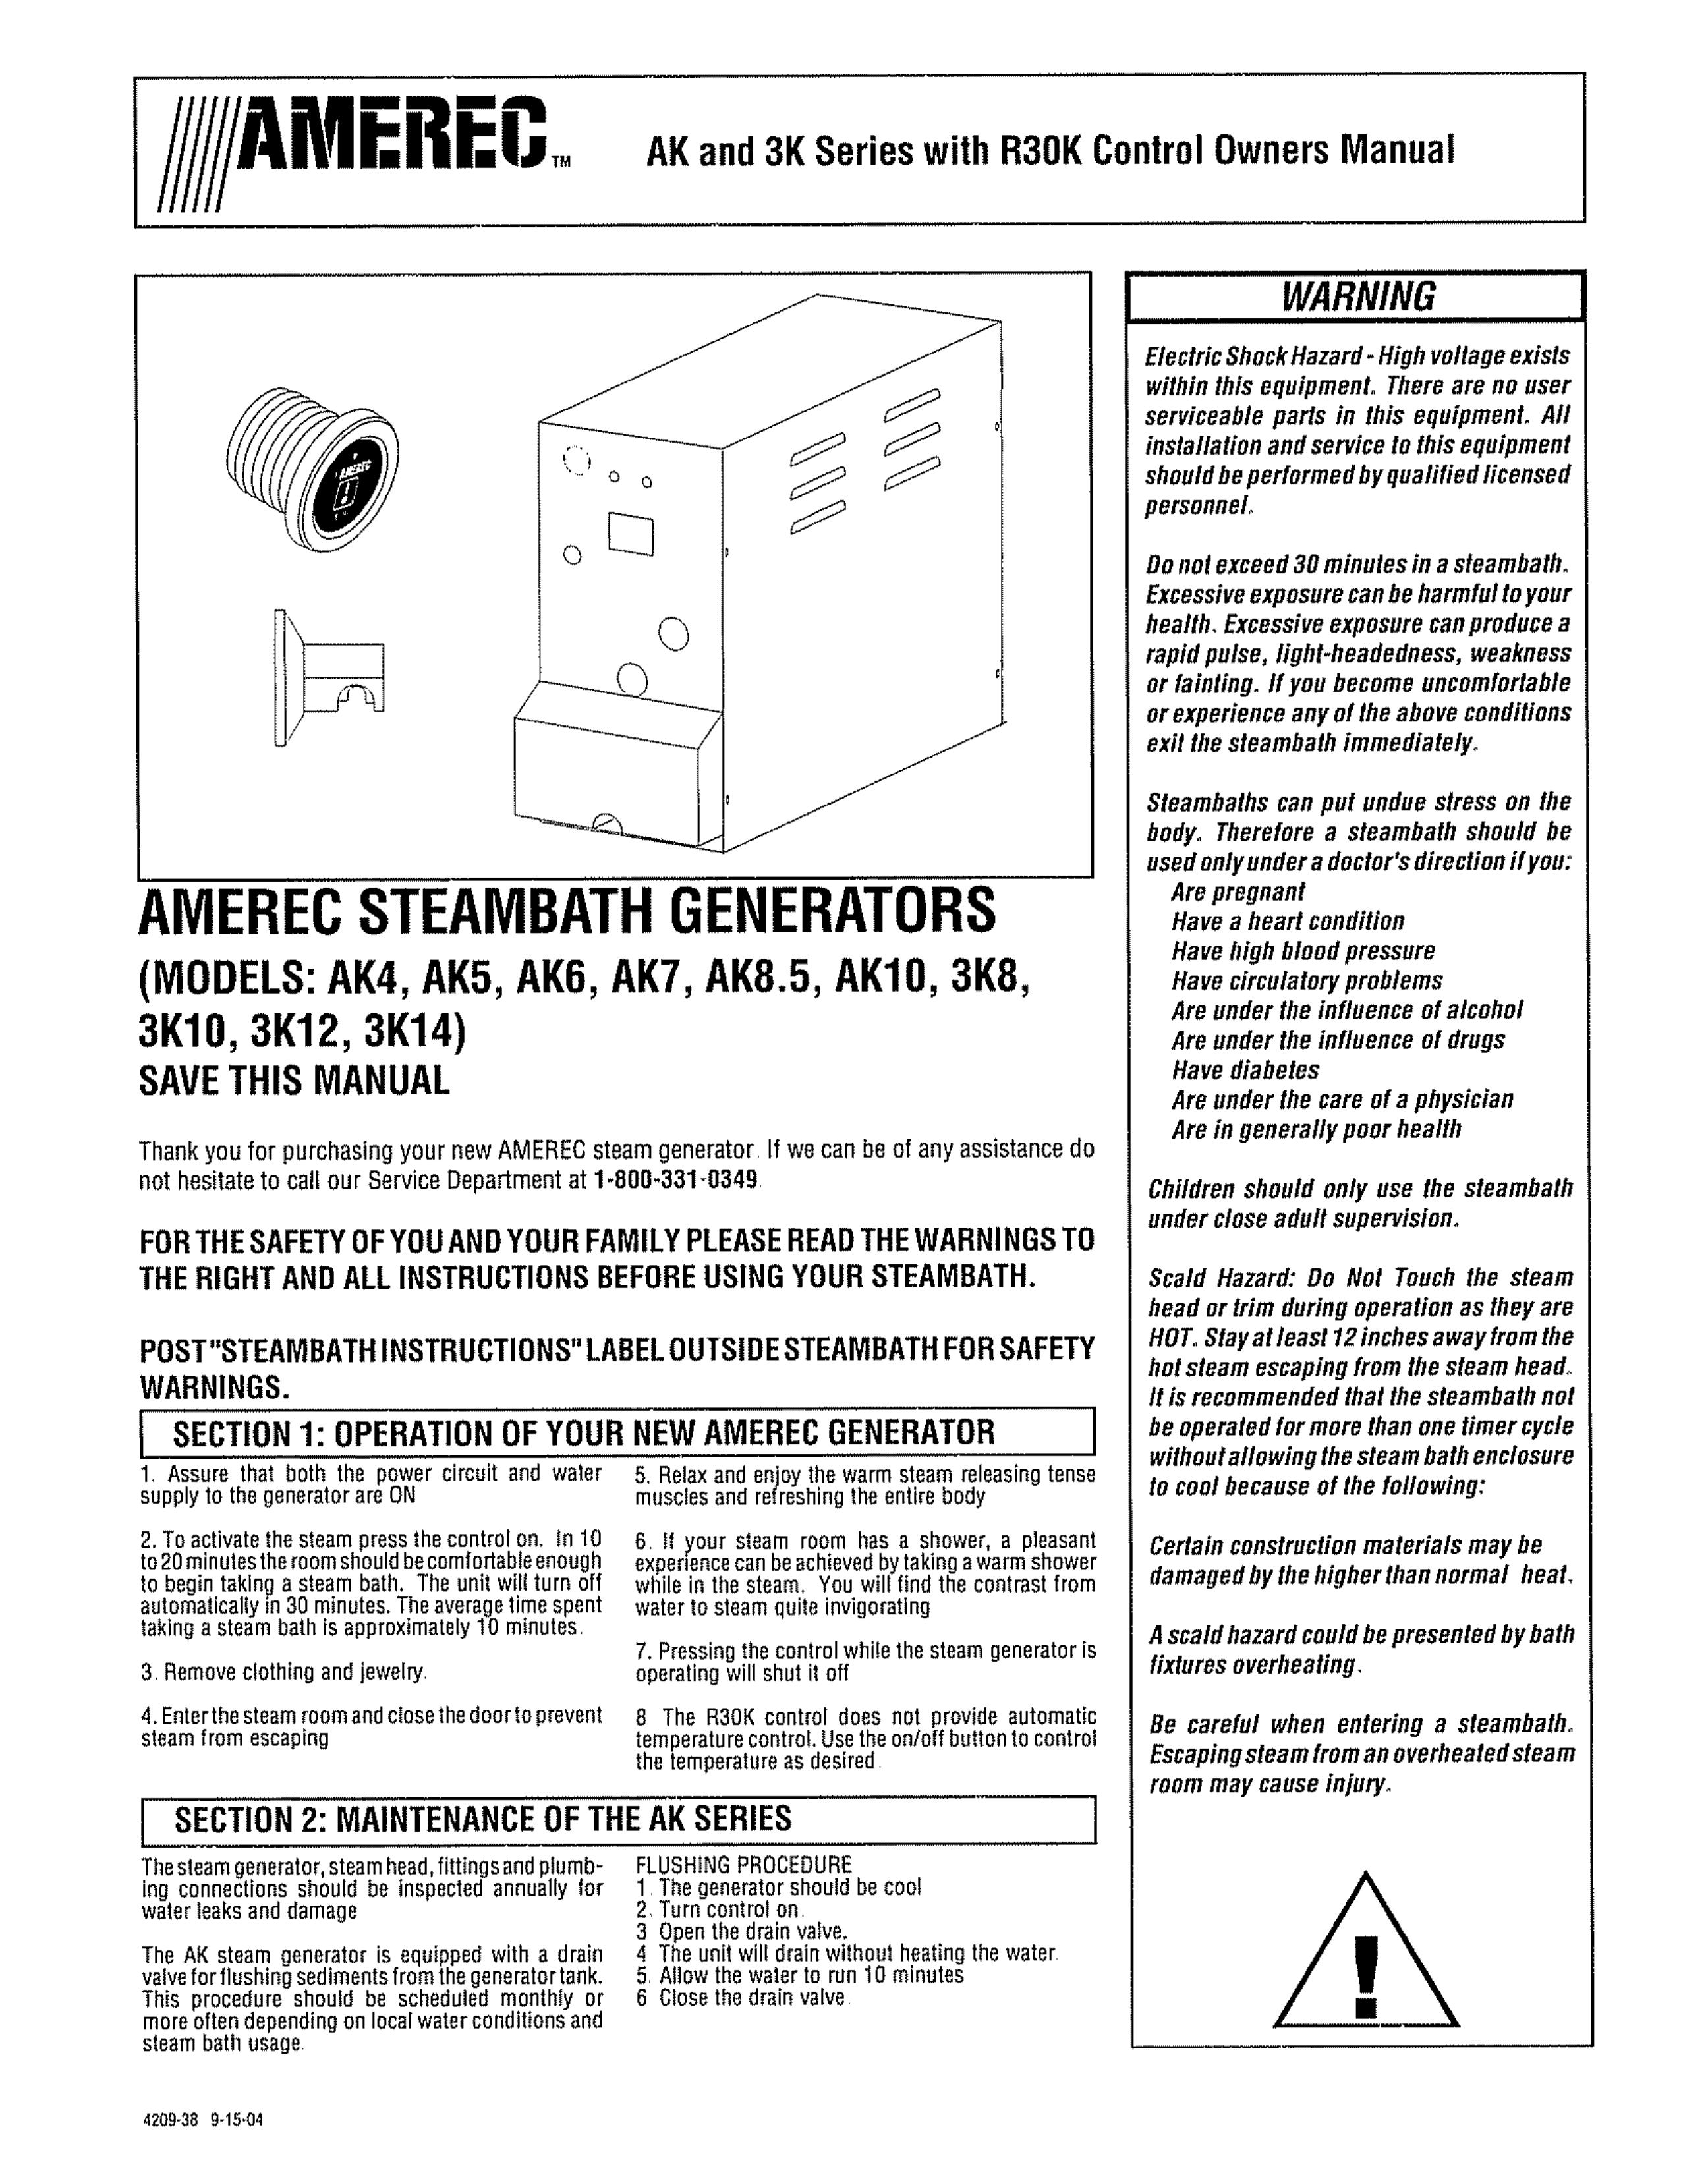 Amerec 3K10 Portable Generator User Manual